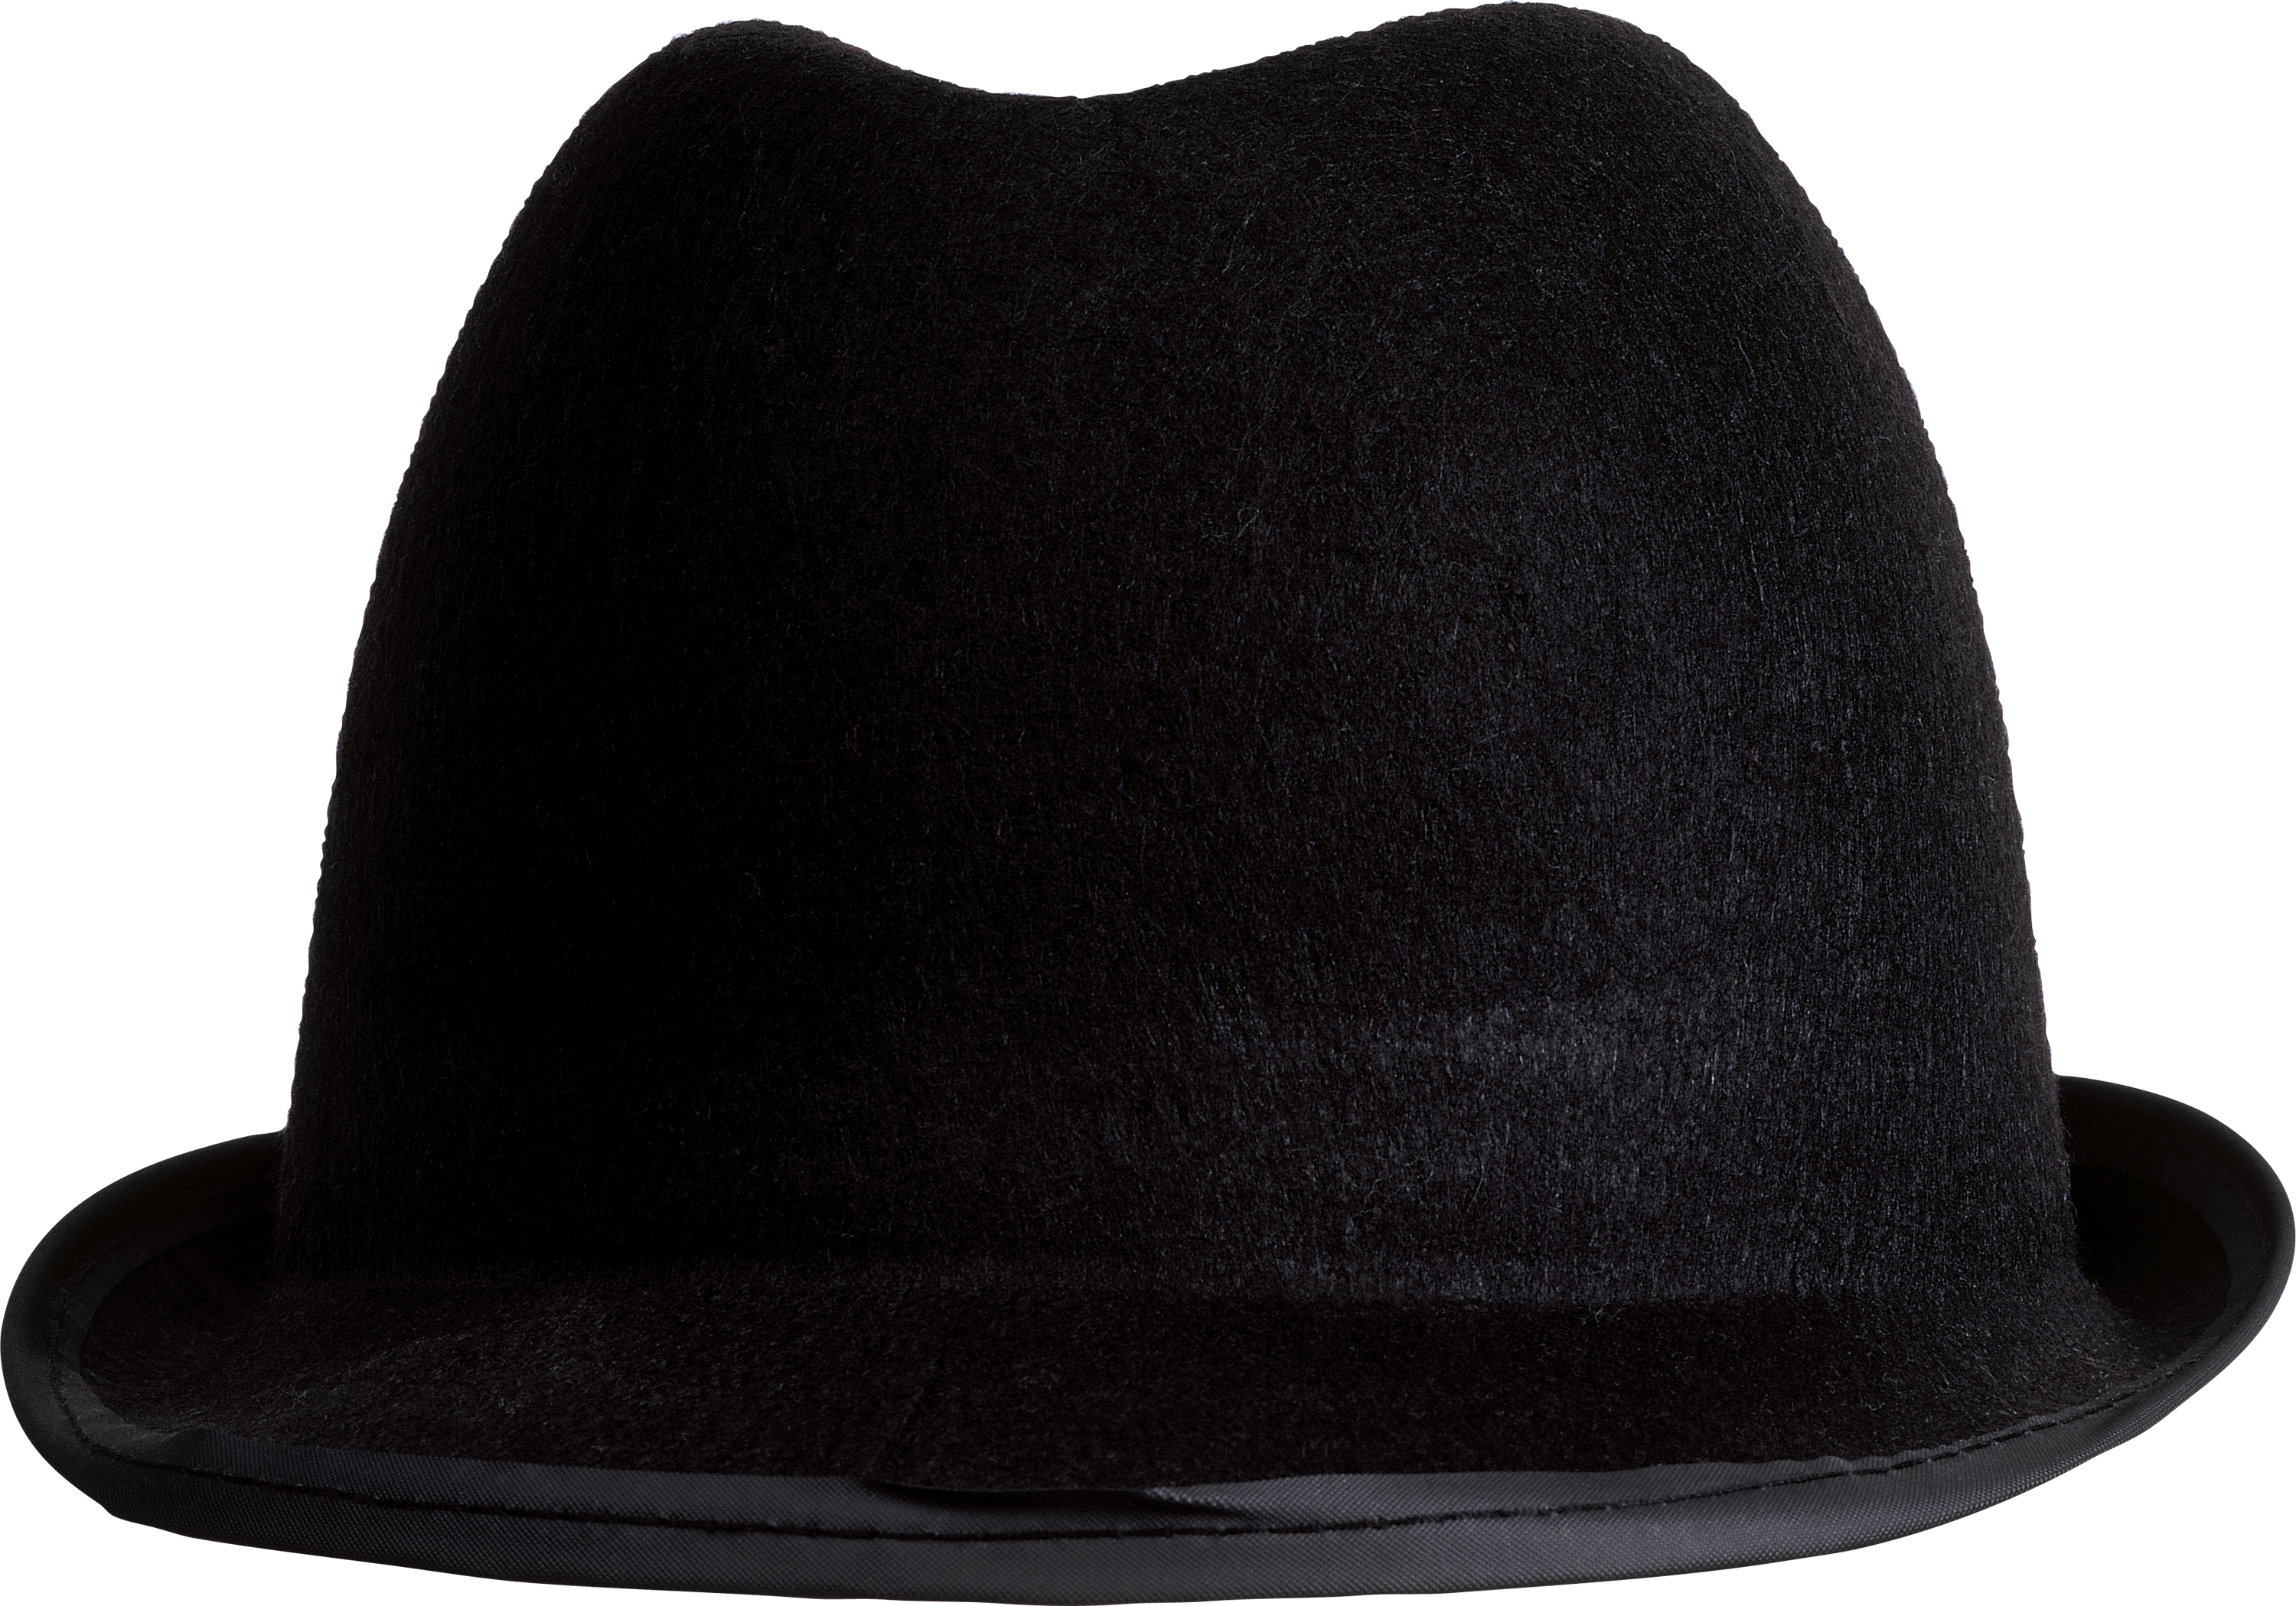 Шляпа. Шляпа черная. Мужская шляпа на прозрачном фоне. Шляпа "котелок" черная. Augen hat